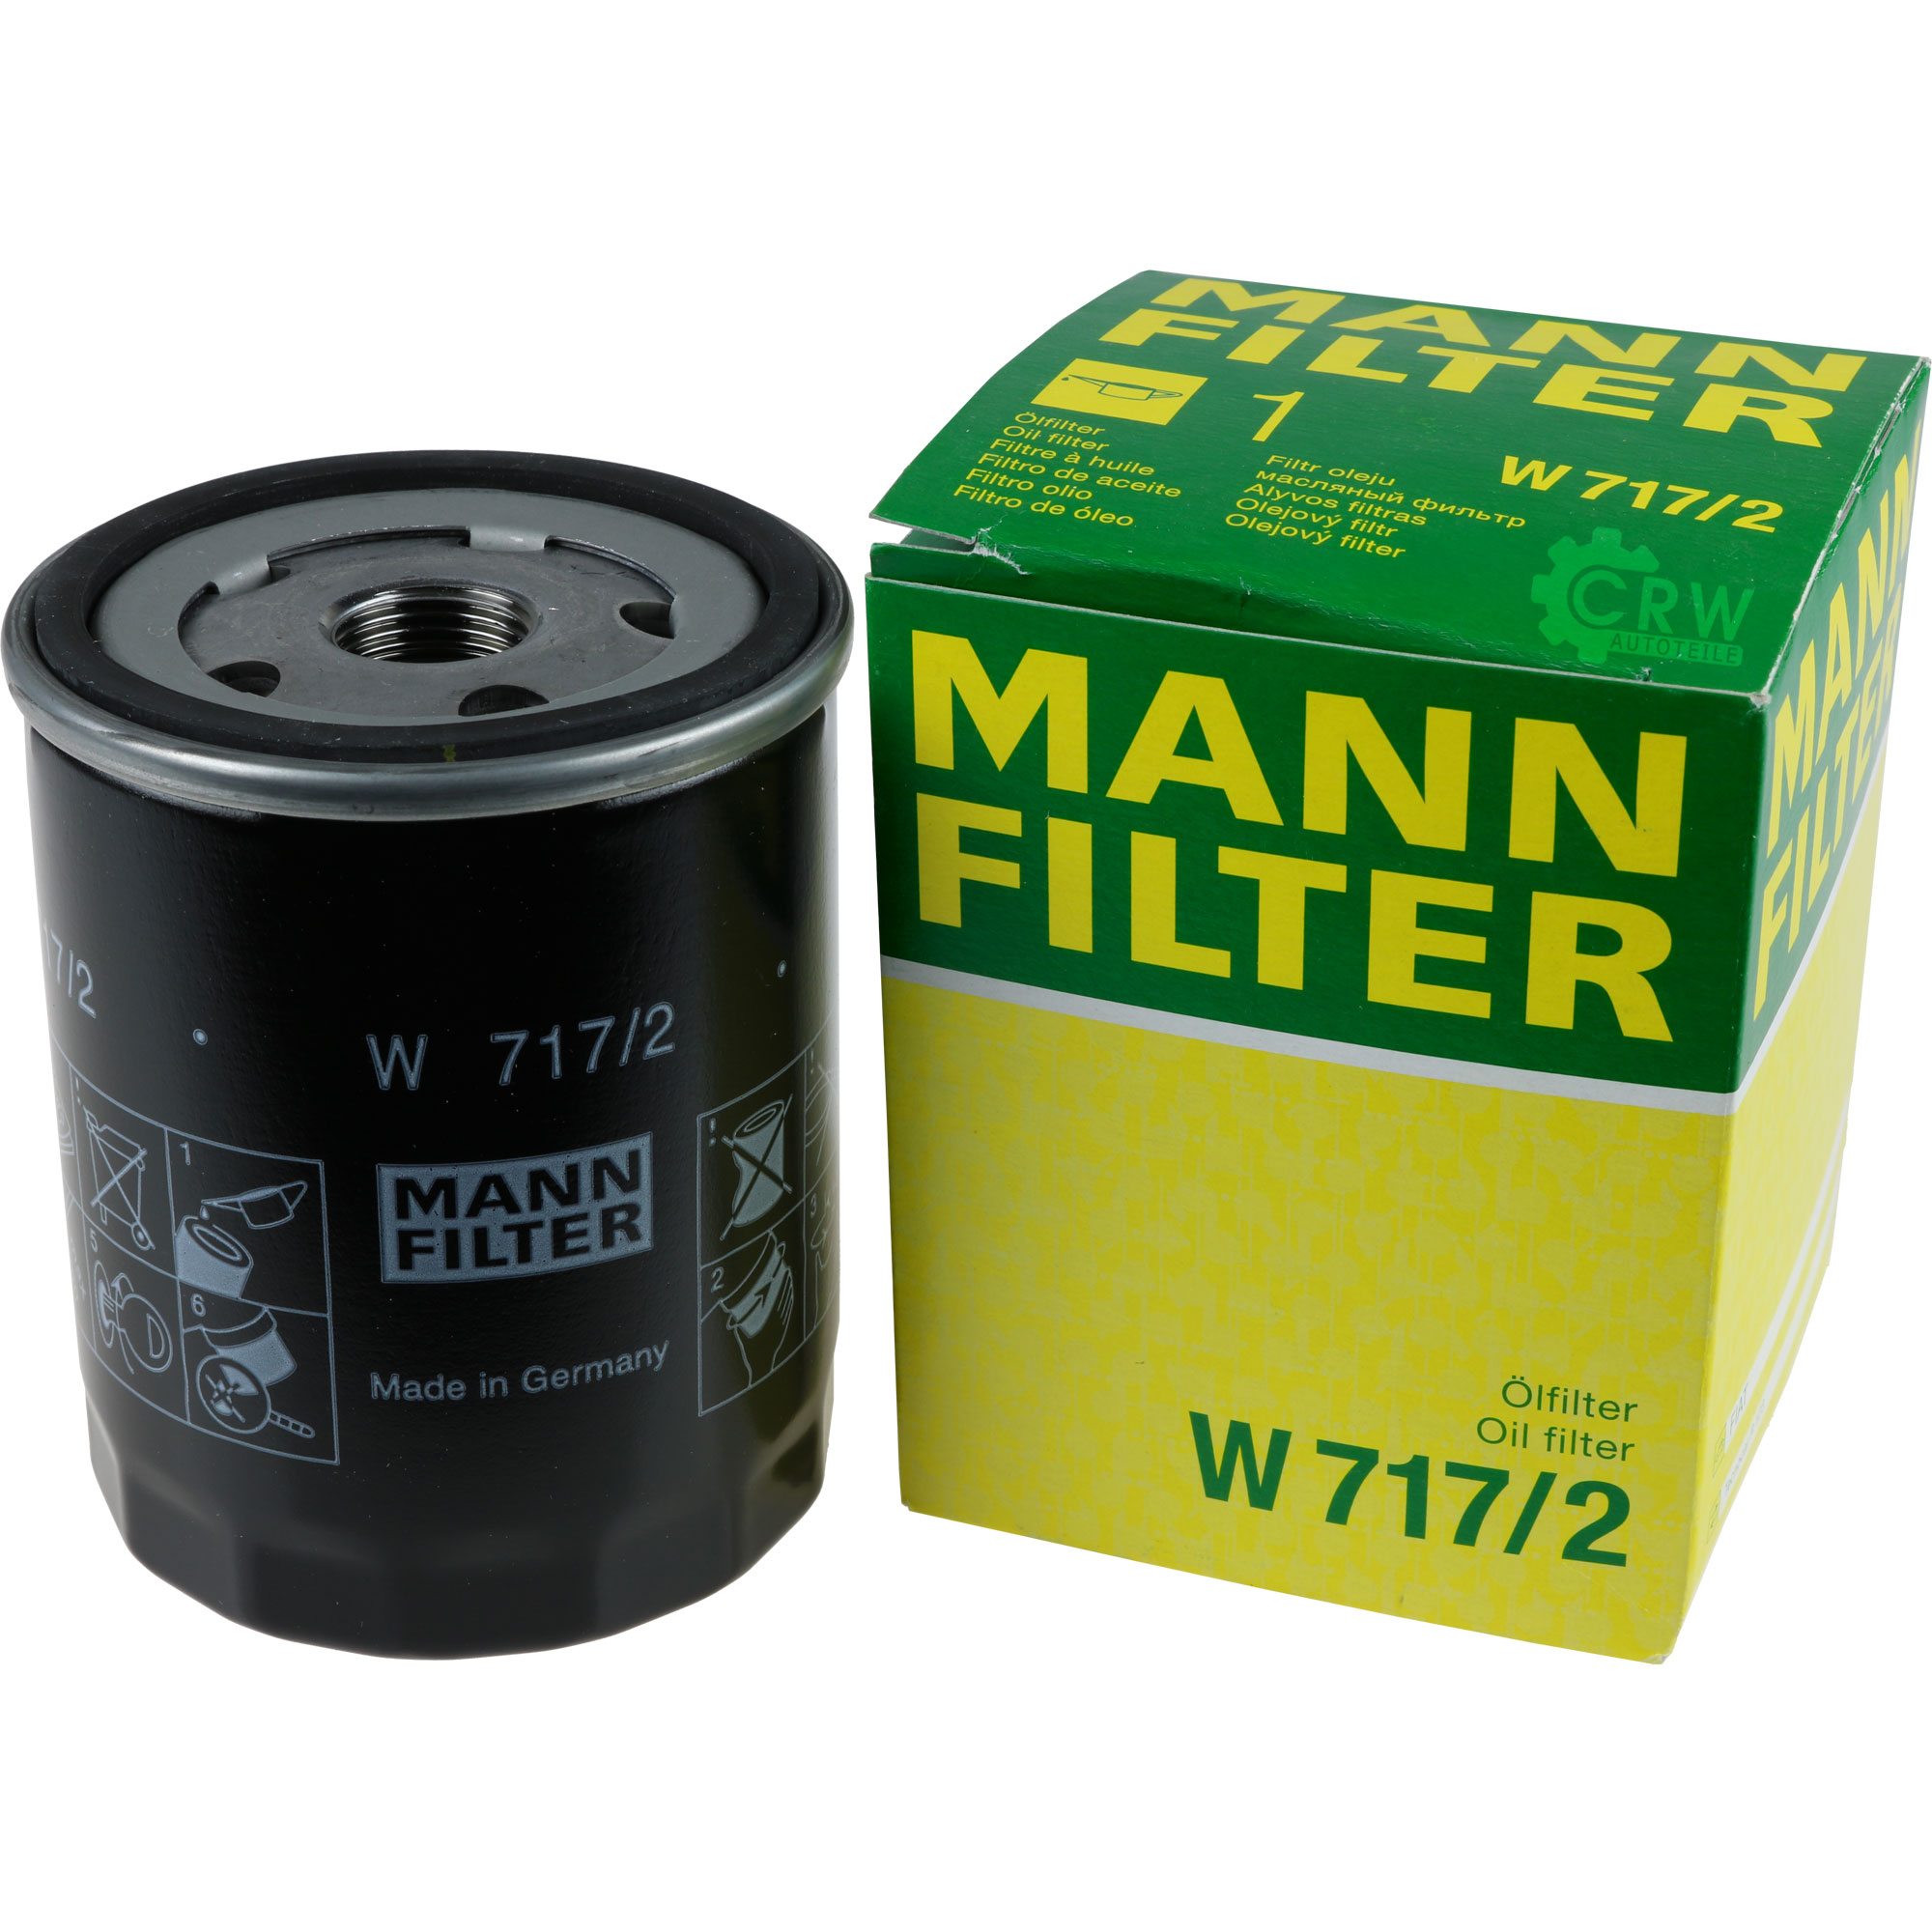 MANN-FILTER Ölfilter W 717/2 Oil Filter